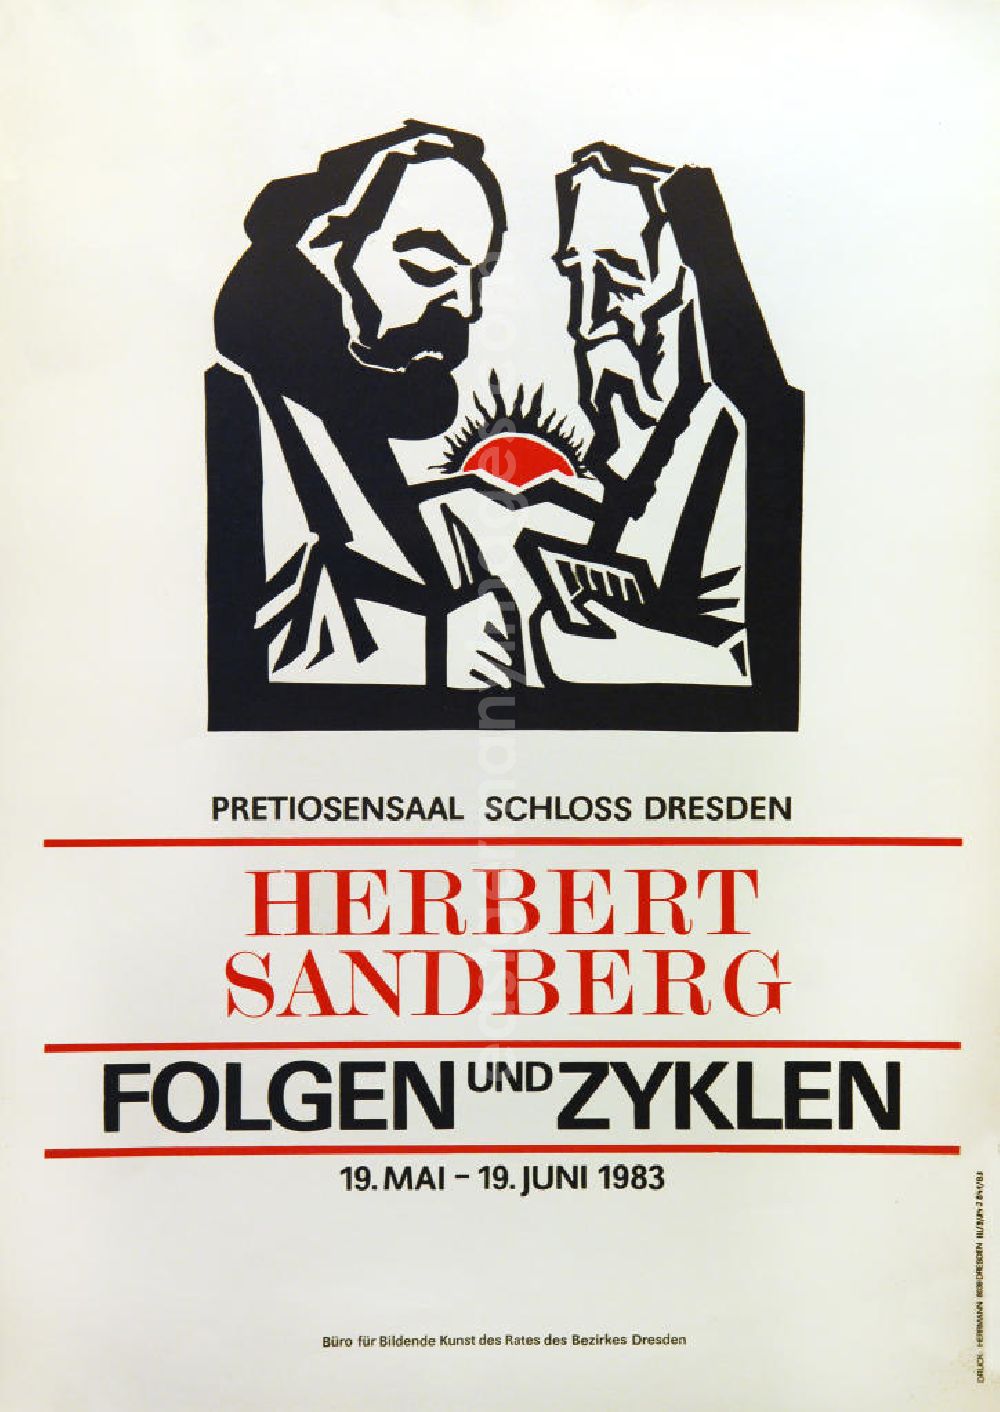 GDR picture archive: Berlin - Plakat der Ausstellung Herbert Sandberg, Folgen und Zyklen vom 19.05.-19.06.1983 Pretiosensaal Schloss Dresden, 4